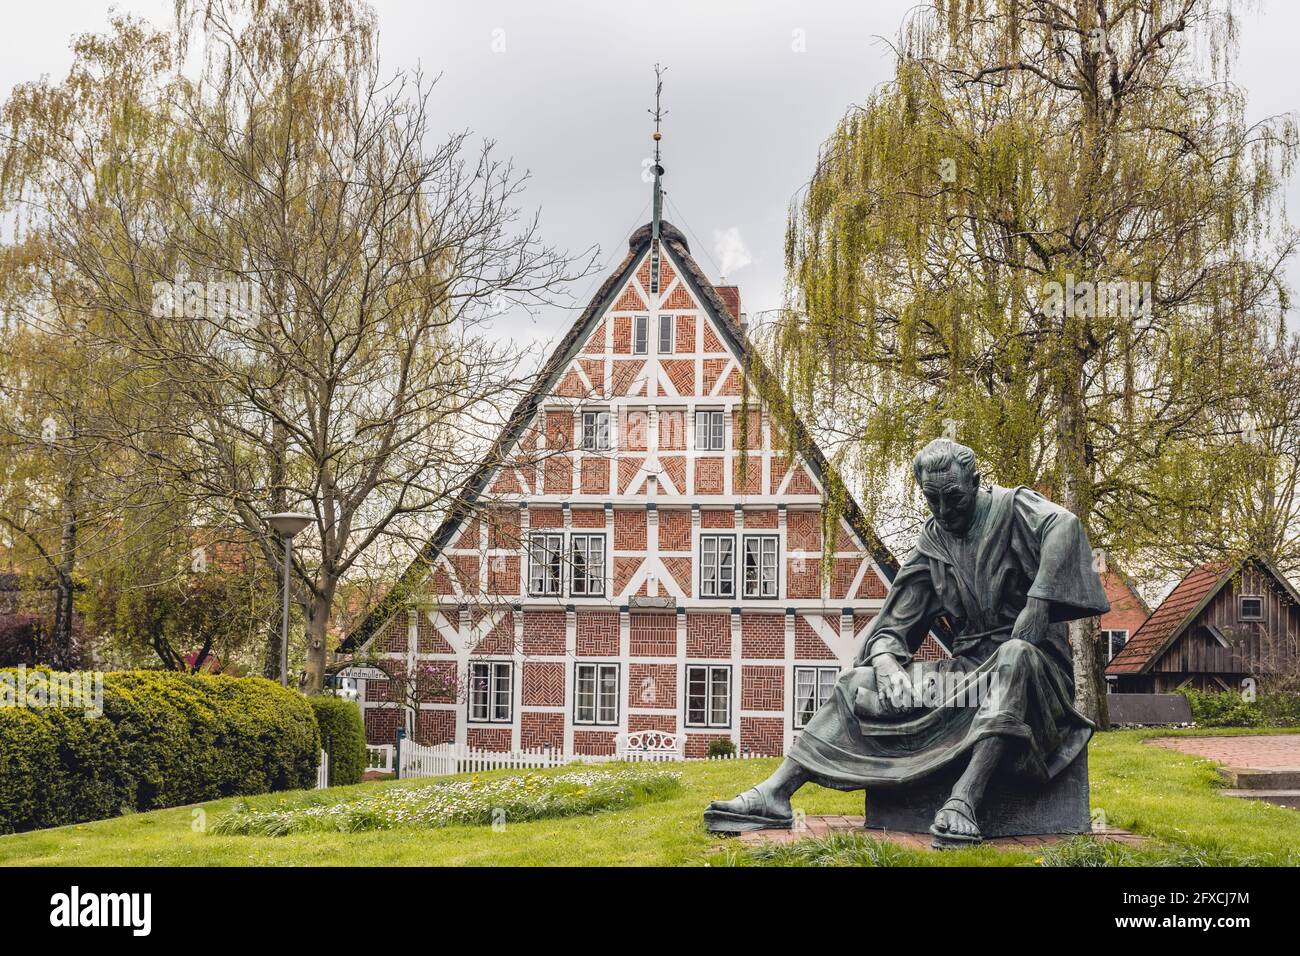 Alemania, Altes Land, casa de entramado de madera con estatua del sacerdote Heinrich von Carsten Eggers en primer plano Foto de stock